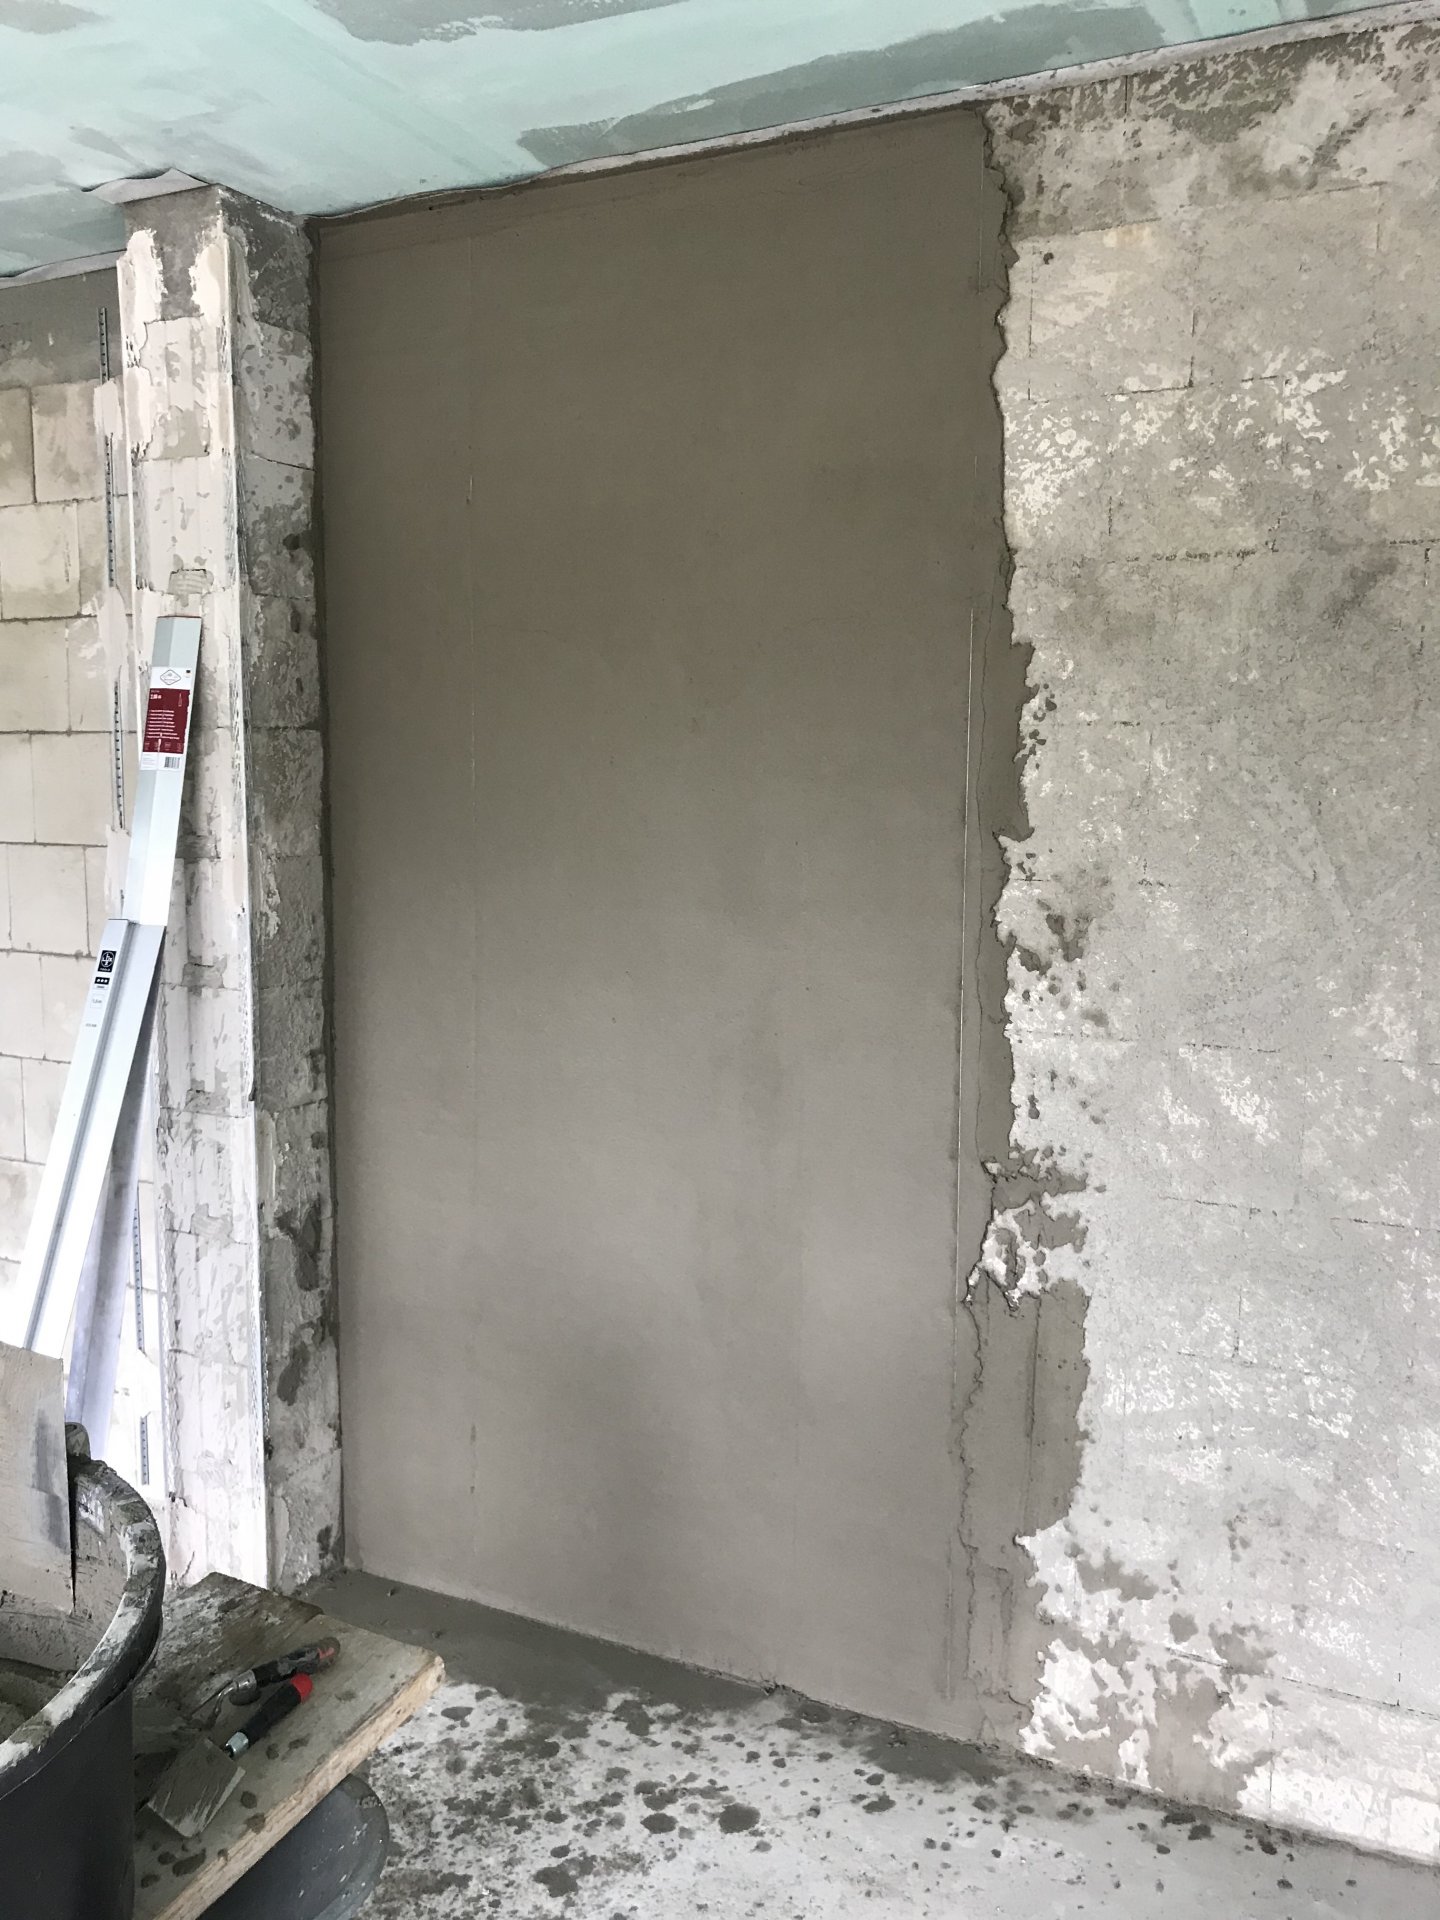 Probleme mit Kalk-Zement-Putz auf Kalksandstein Innenwand